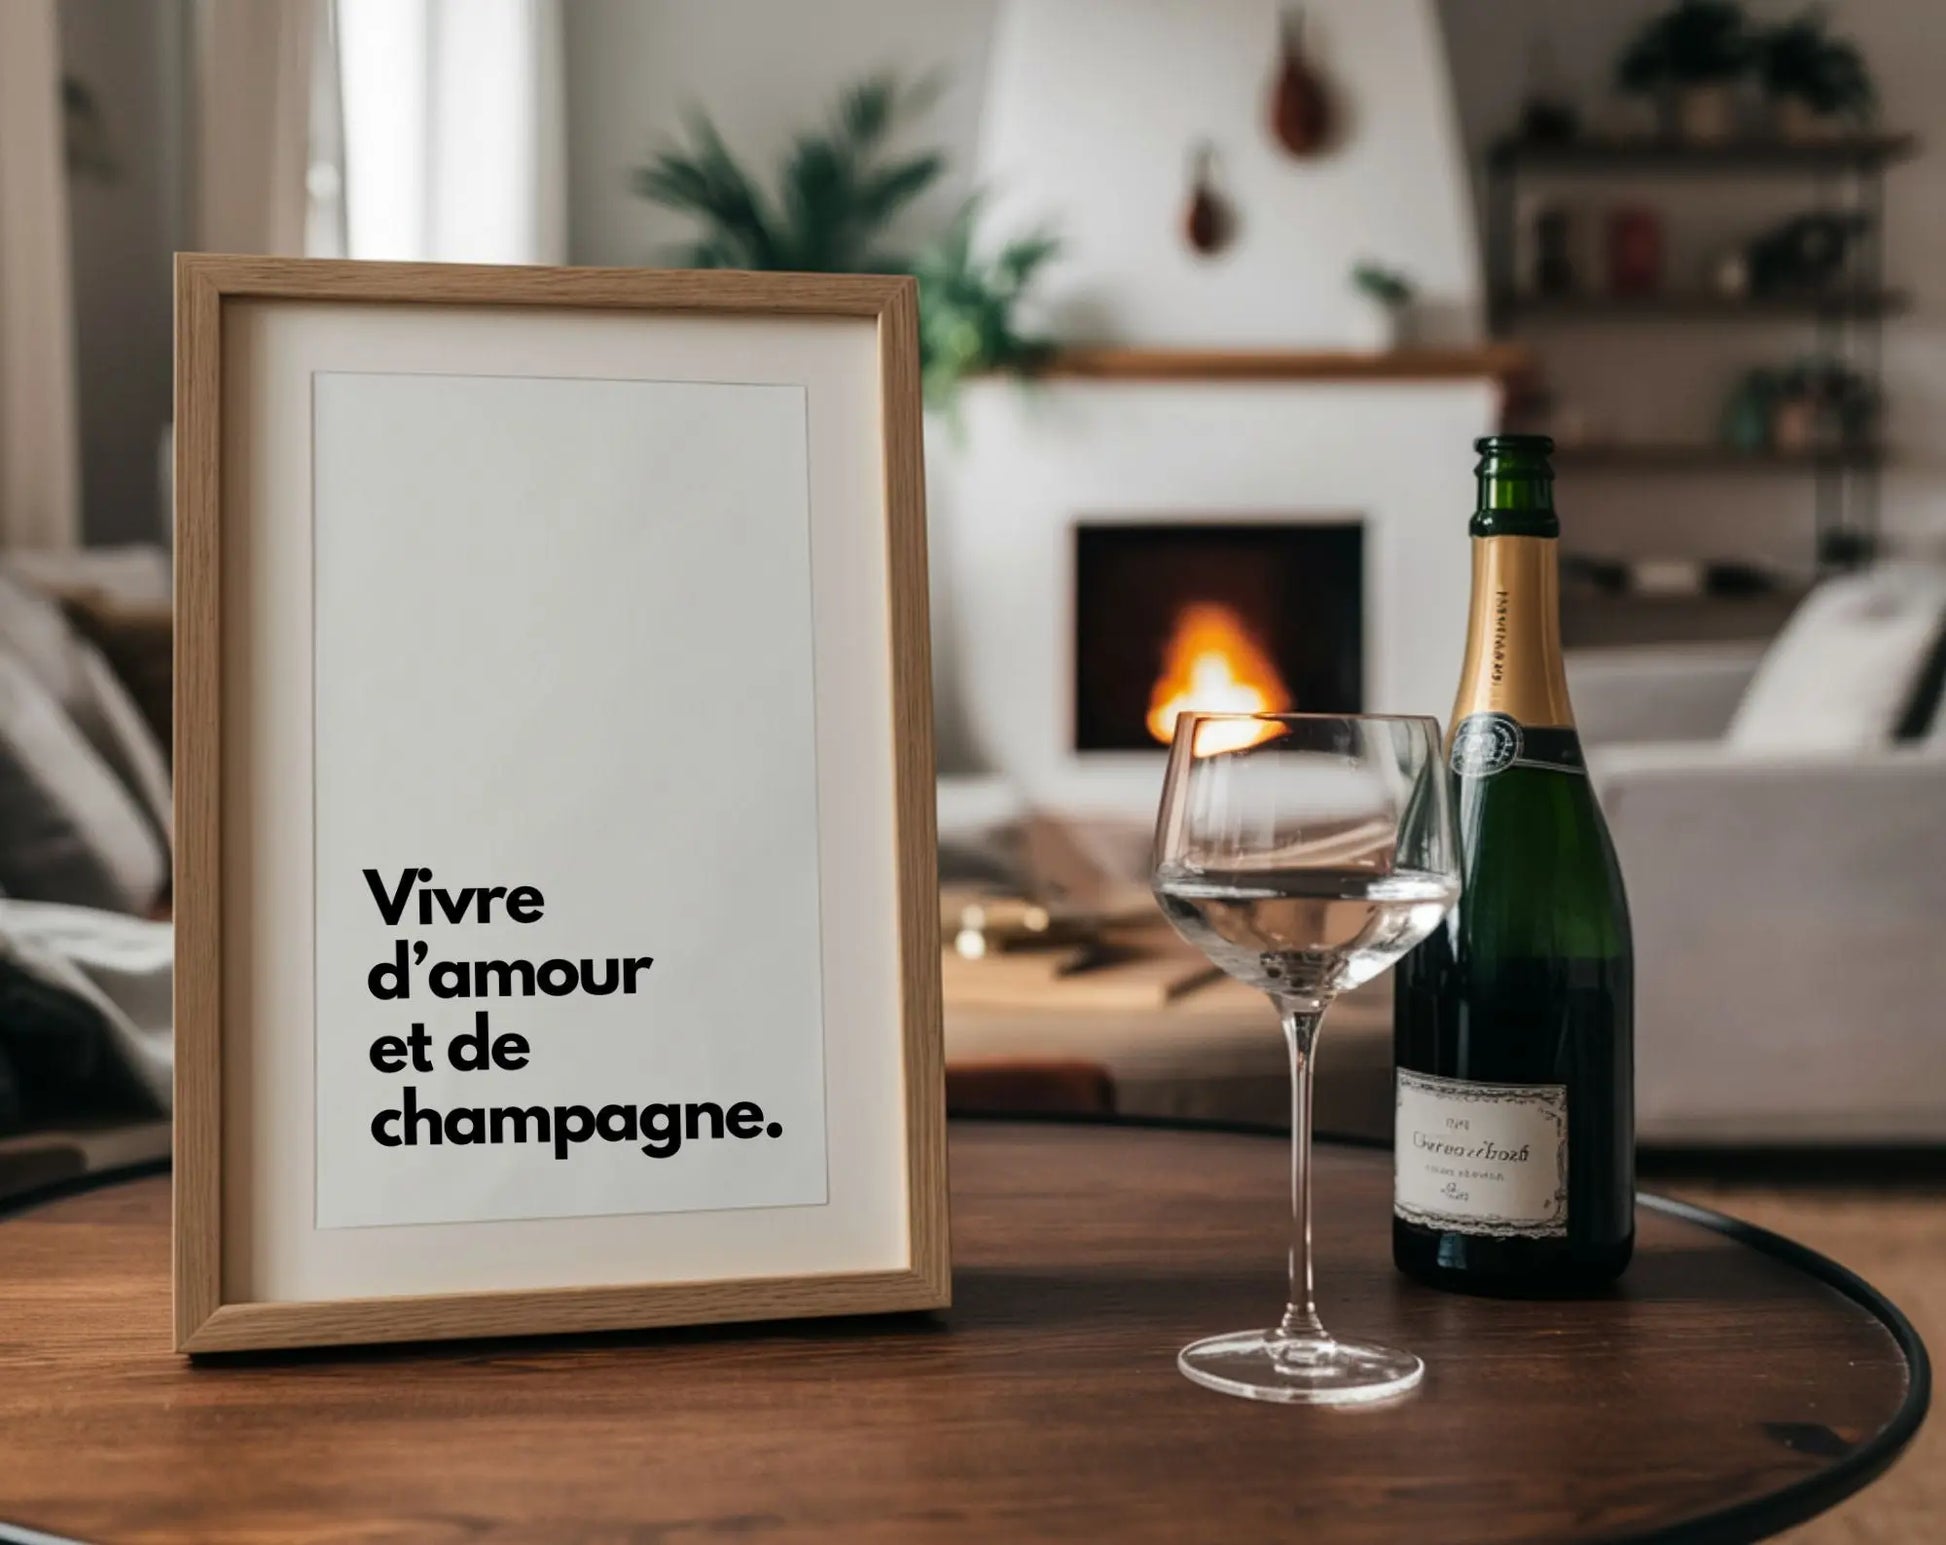 Vivre d'amour et de champagne - Affiche humour citation alcool FLTMfrance